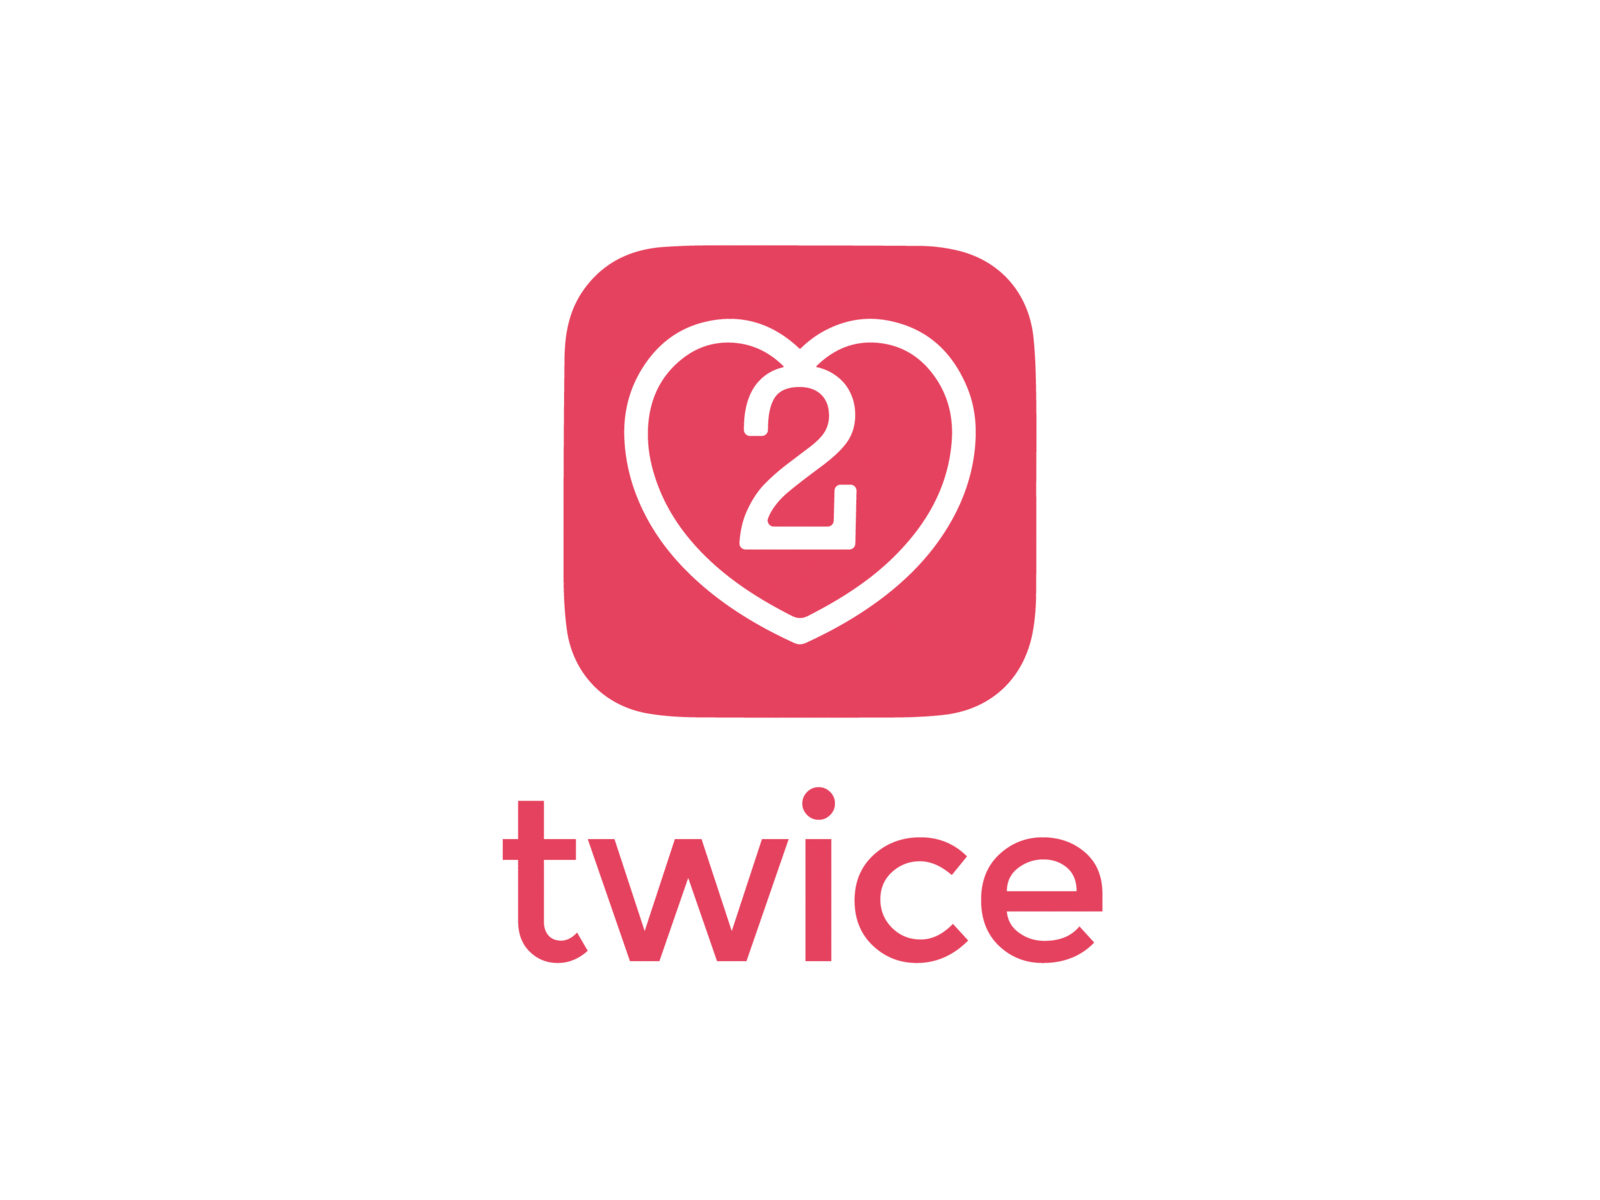 "Dating app" logo app app logo branding dailylogochallenge datingapp heart logo mobile app twice two vector